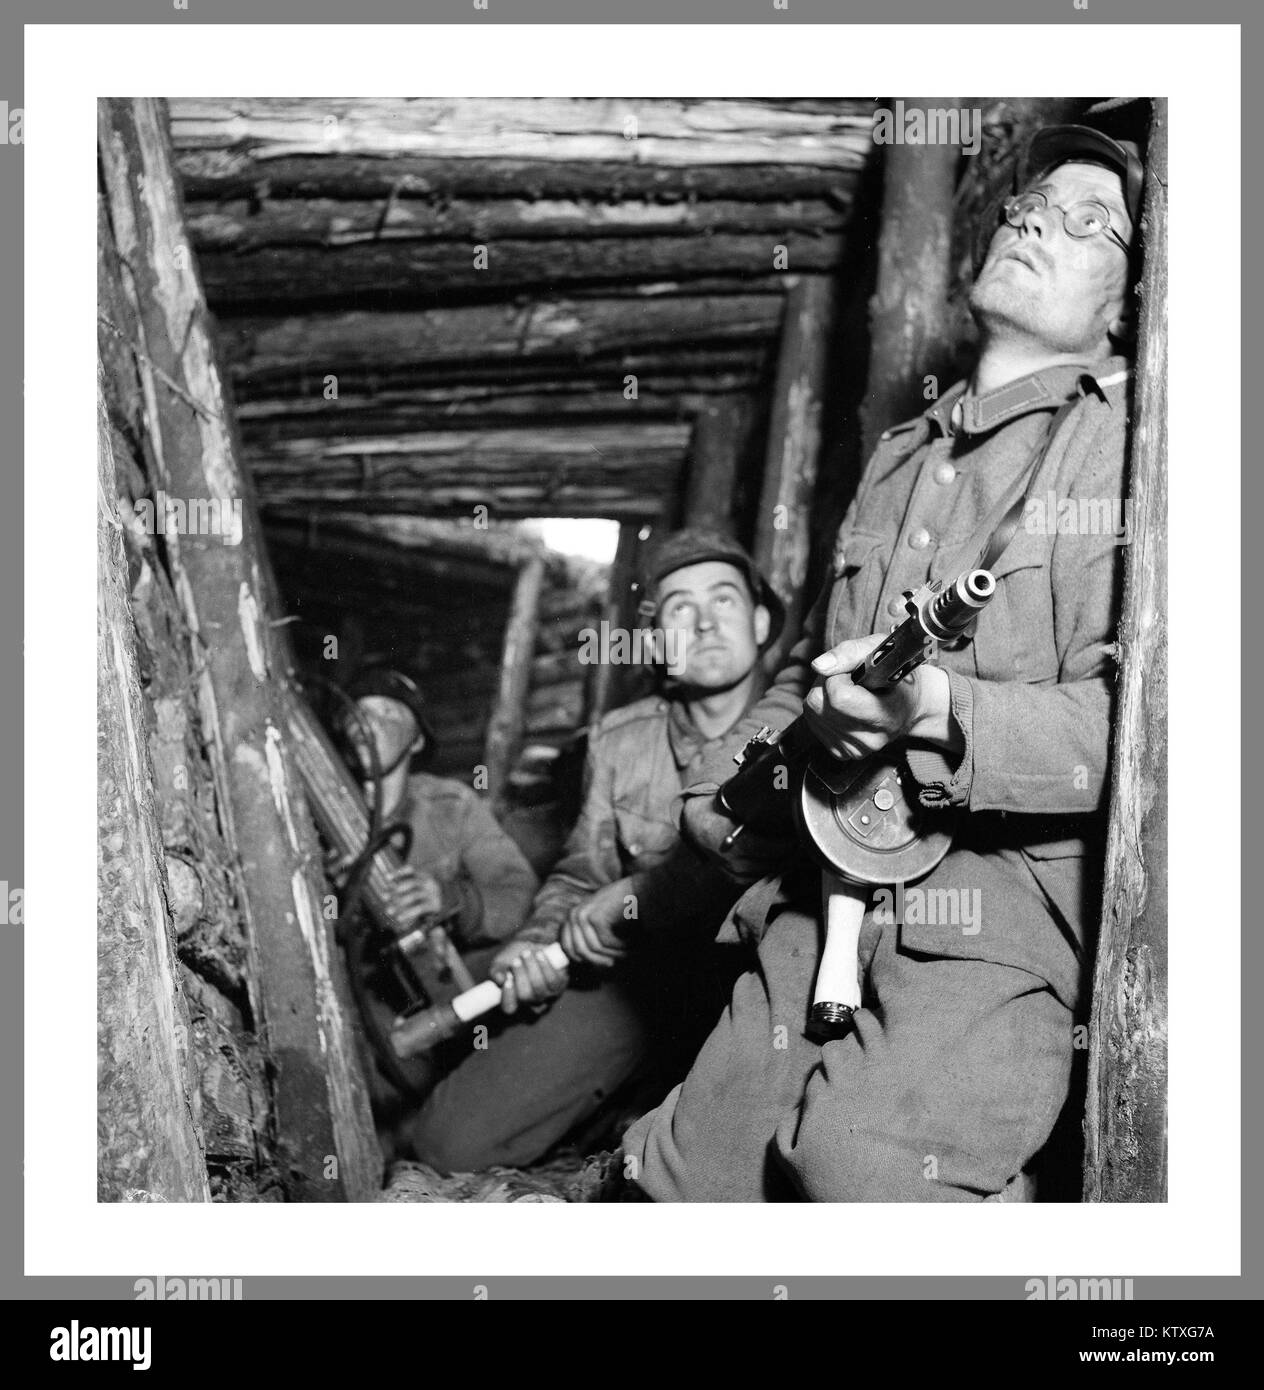 Proseguimento guerra parte del Fronte Orientale della seconda guerra mondiale i soldati finlandesi, VT-line in 1944, Karelian offensivo; 'Allarme in VT-le posizioni linea' 25 giugno 1941 - 19 settembre 1944 (3 anni e 2 mesi, 3 settimane e 4 giorni) Finlandia, la Carelia e la regione di Murmansk vittoria sovietica Mosca armistizio finlandese di mantenere l'indipendenza Foto Stock